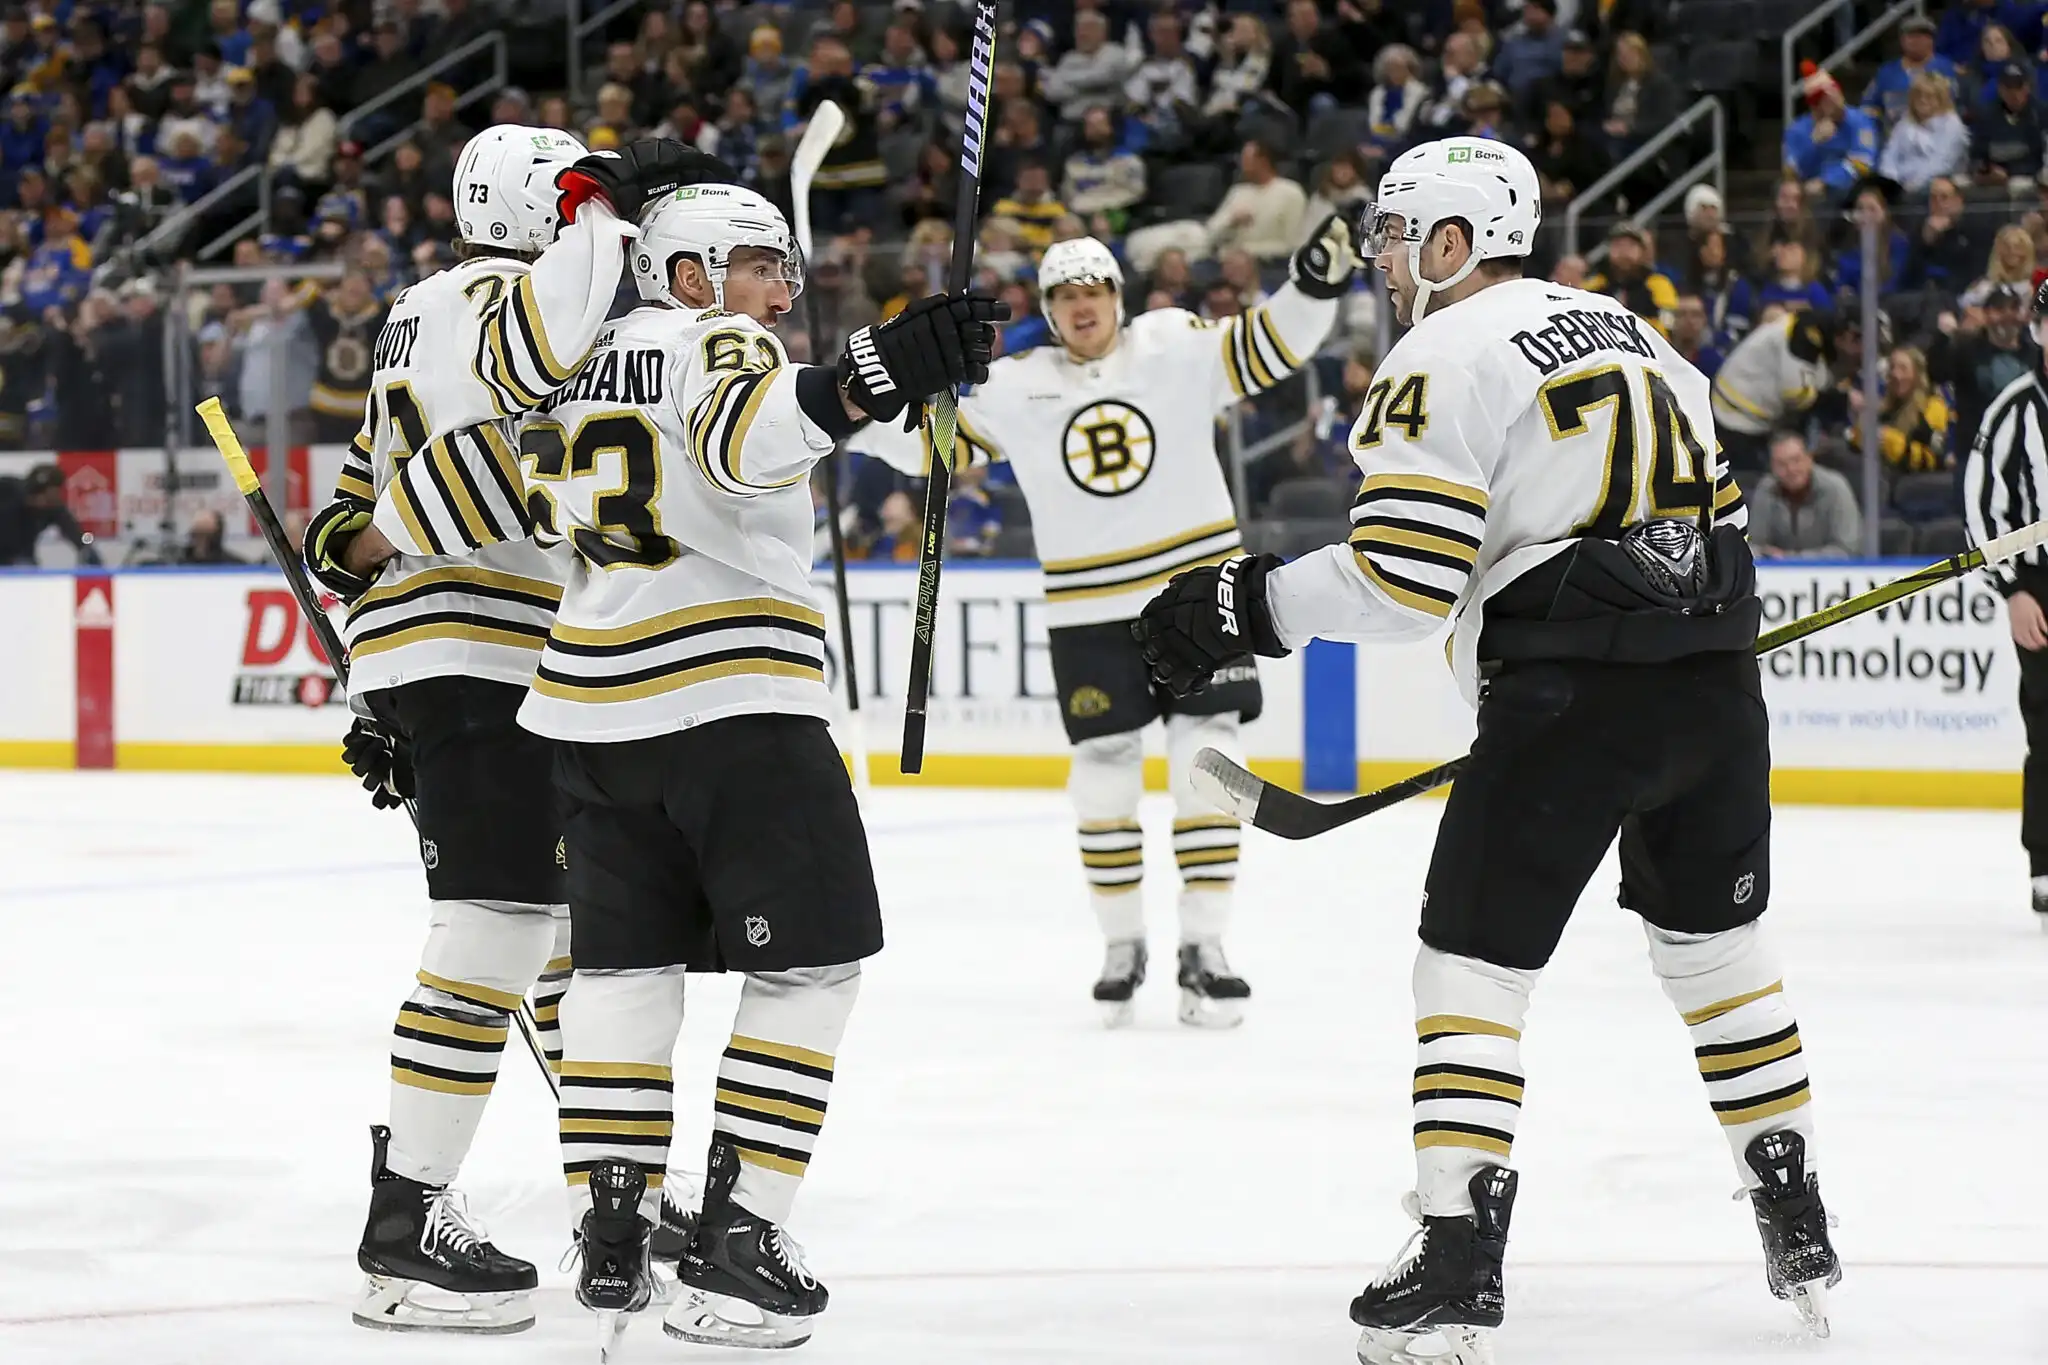 Previa de los Bruins Senators: Los Bruins necesitan empezar mejor